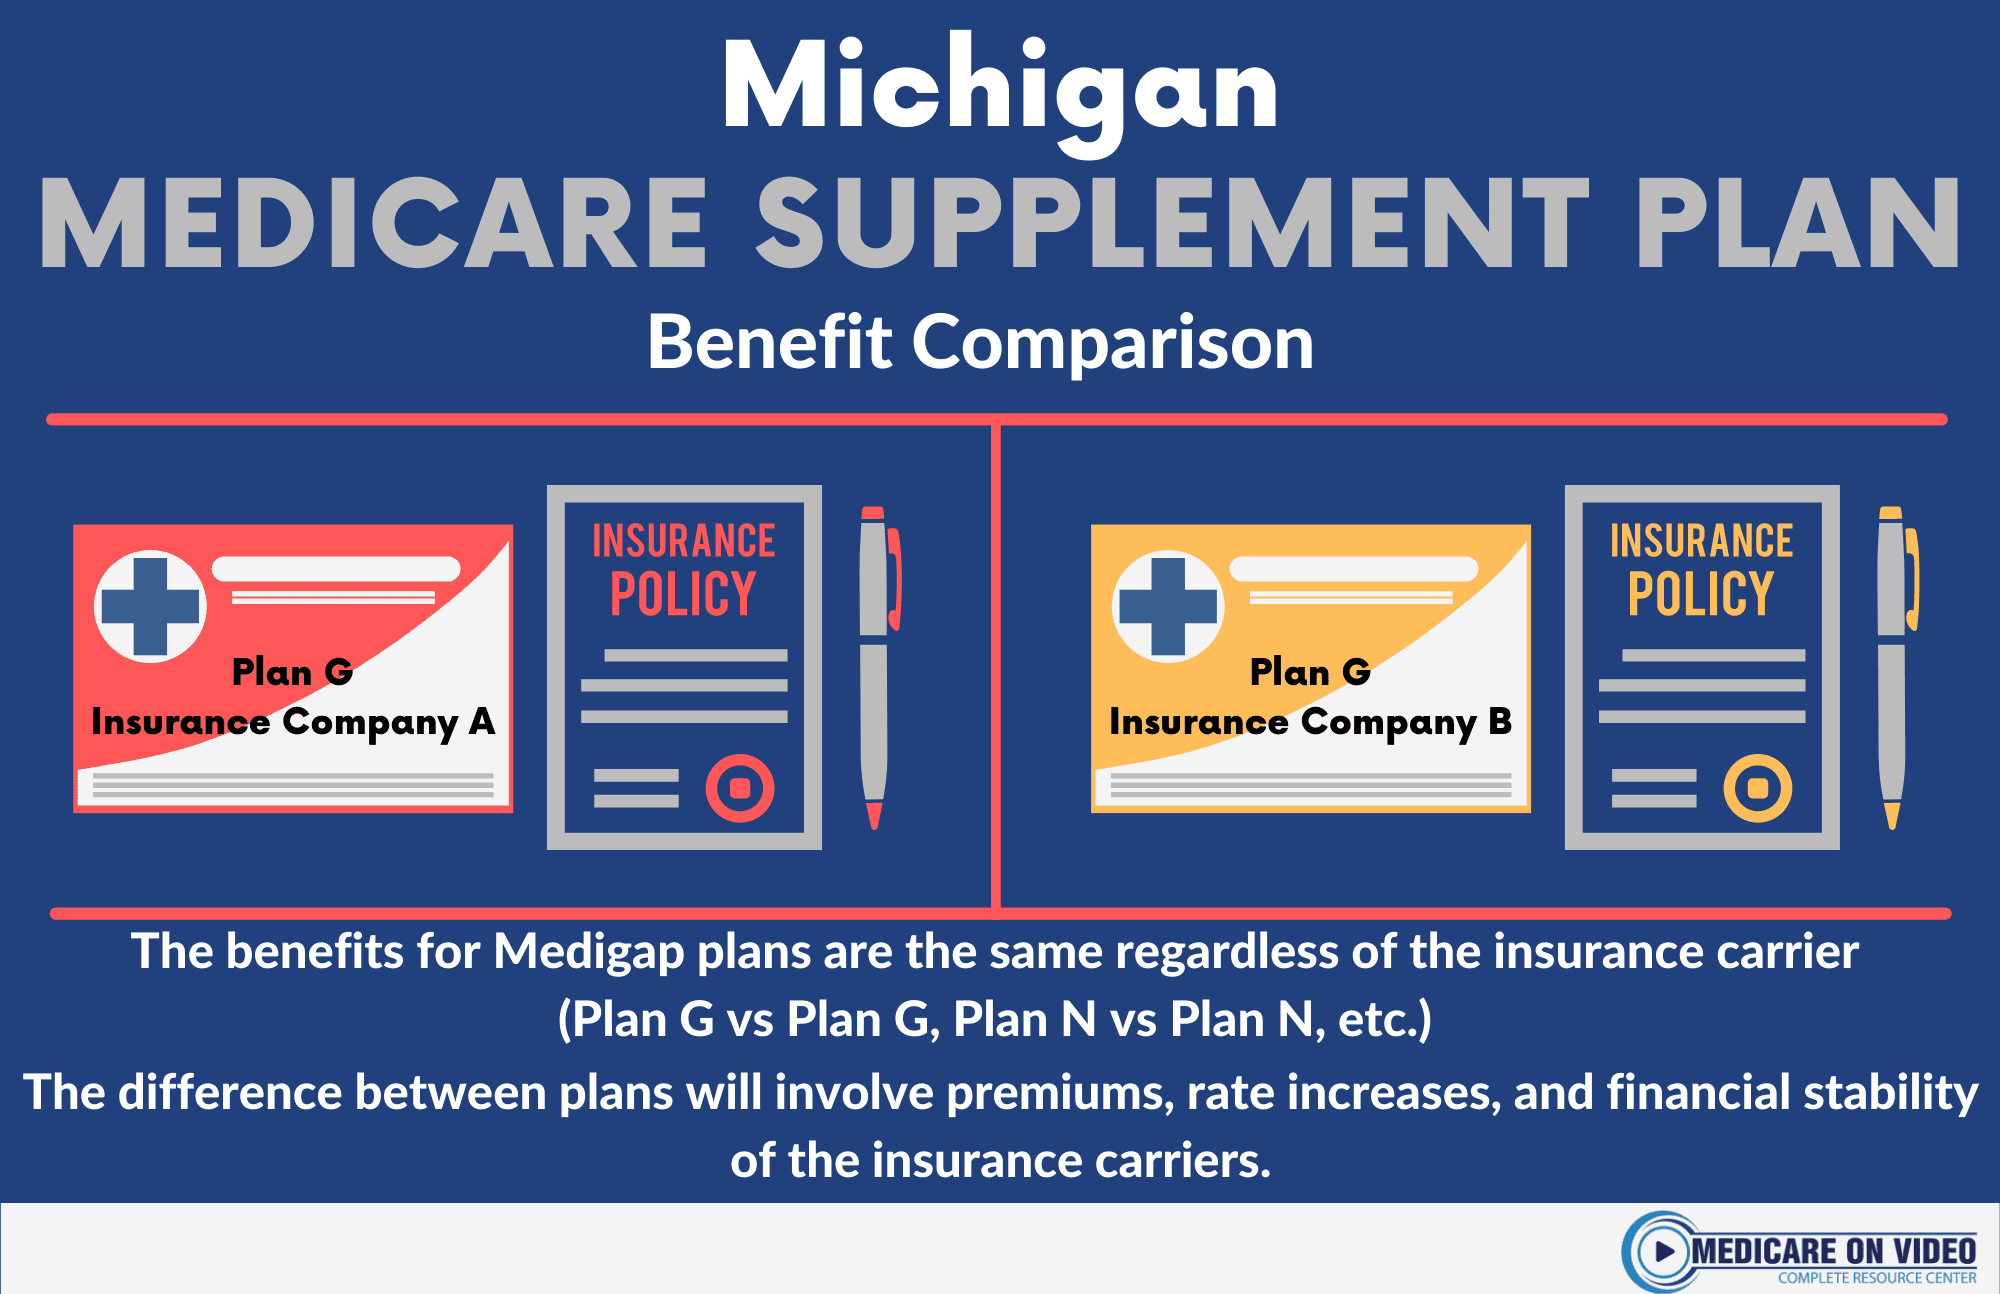 Michigan Medicare Plans Compare Medicare Coverage Options in MI